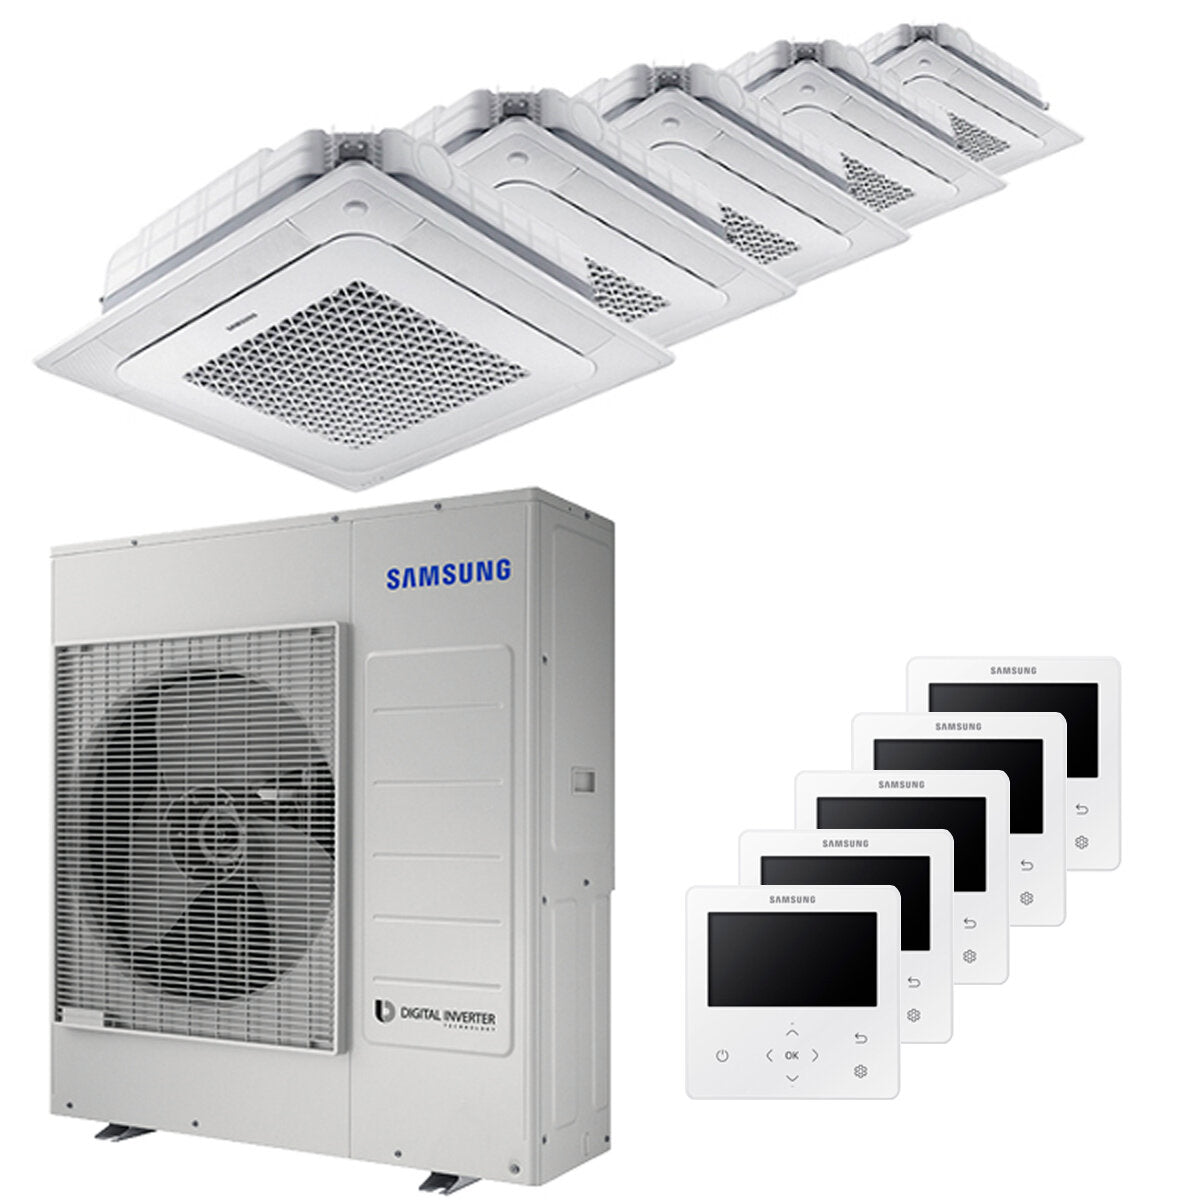 Samsung Air conditioner Windfree 4-way penta split 9000 + 9000 + 9000 + 9000 + 18000 BTU inverter A ++ outdoor unit 10.0 kW